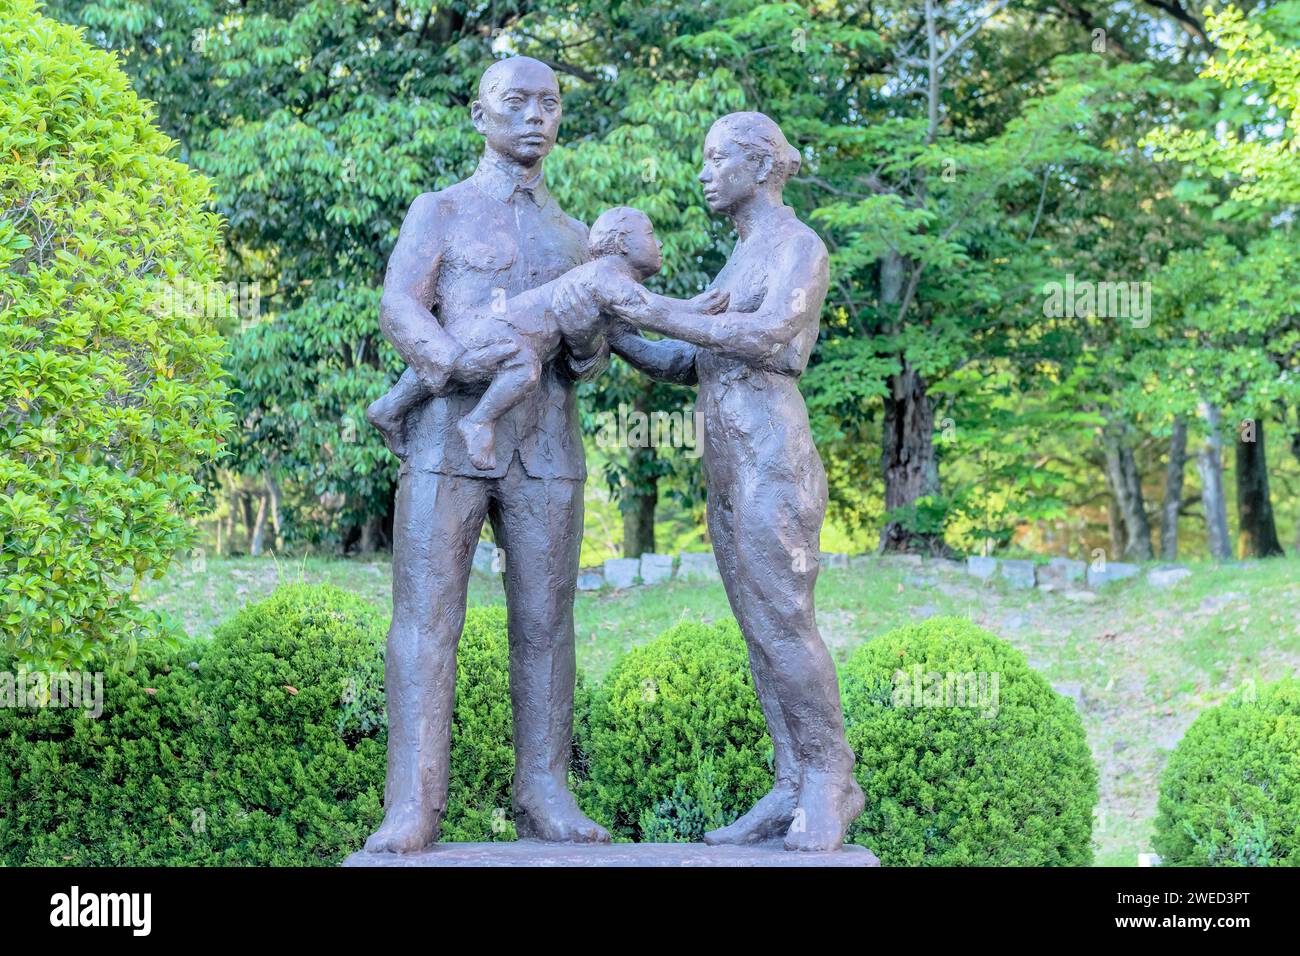 Statua in bronzo di uomo, donna e bambino giapponese nel parco naturale. Artista sconosciuto Foto Stock